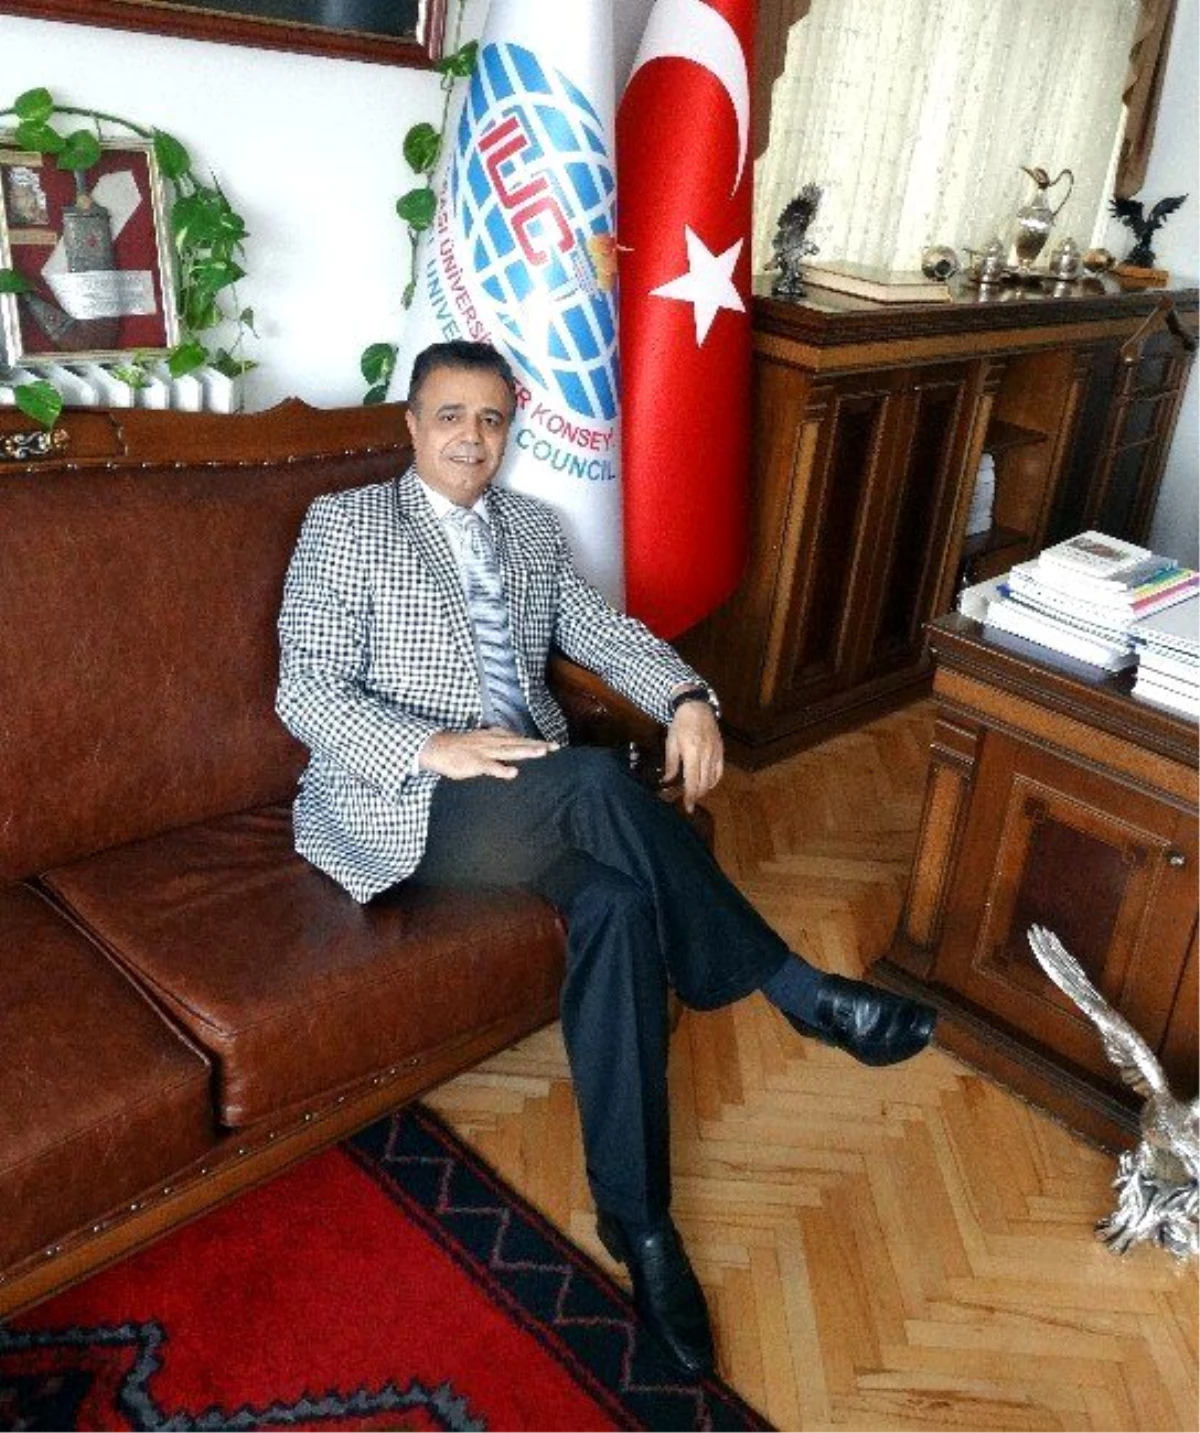 Uluslararası Üniversiteler Konseyi Başkanı Orhan Hikmet Azizoğlu Açıklaması